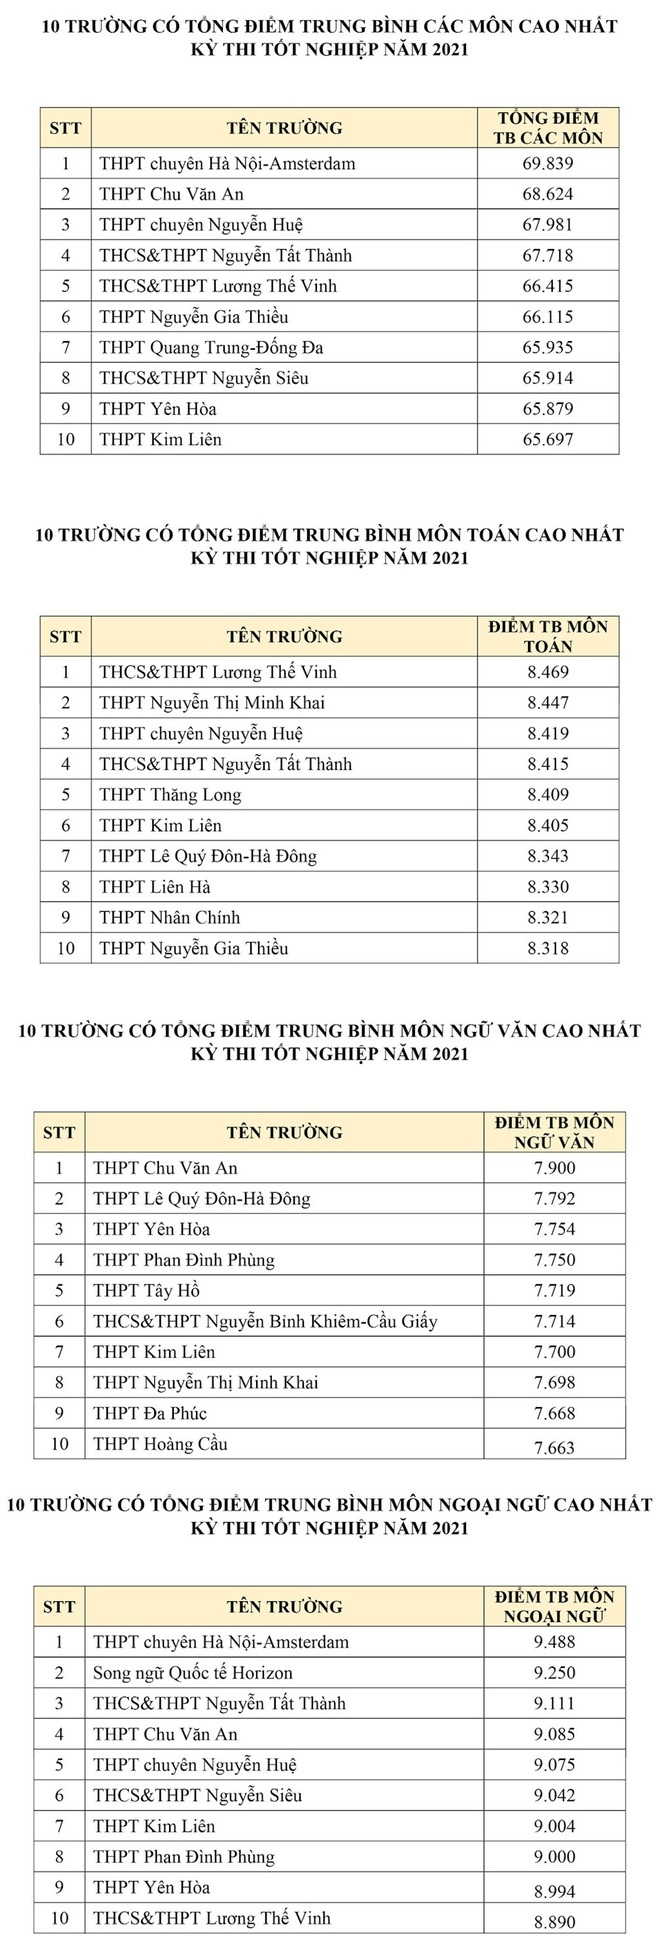 Hà Nội: Top 10 trường có tổng điểm thi tốt nghiệp THPT cao nhất